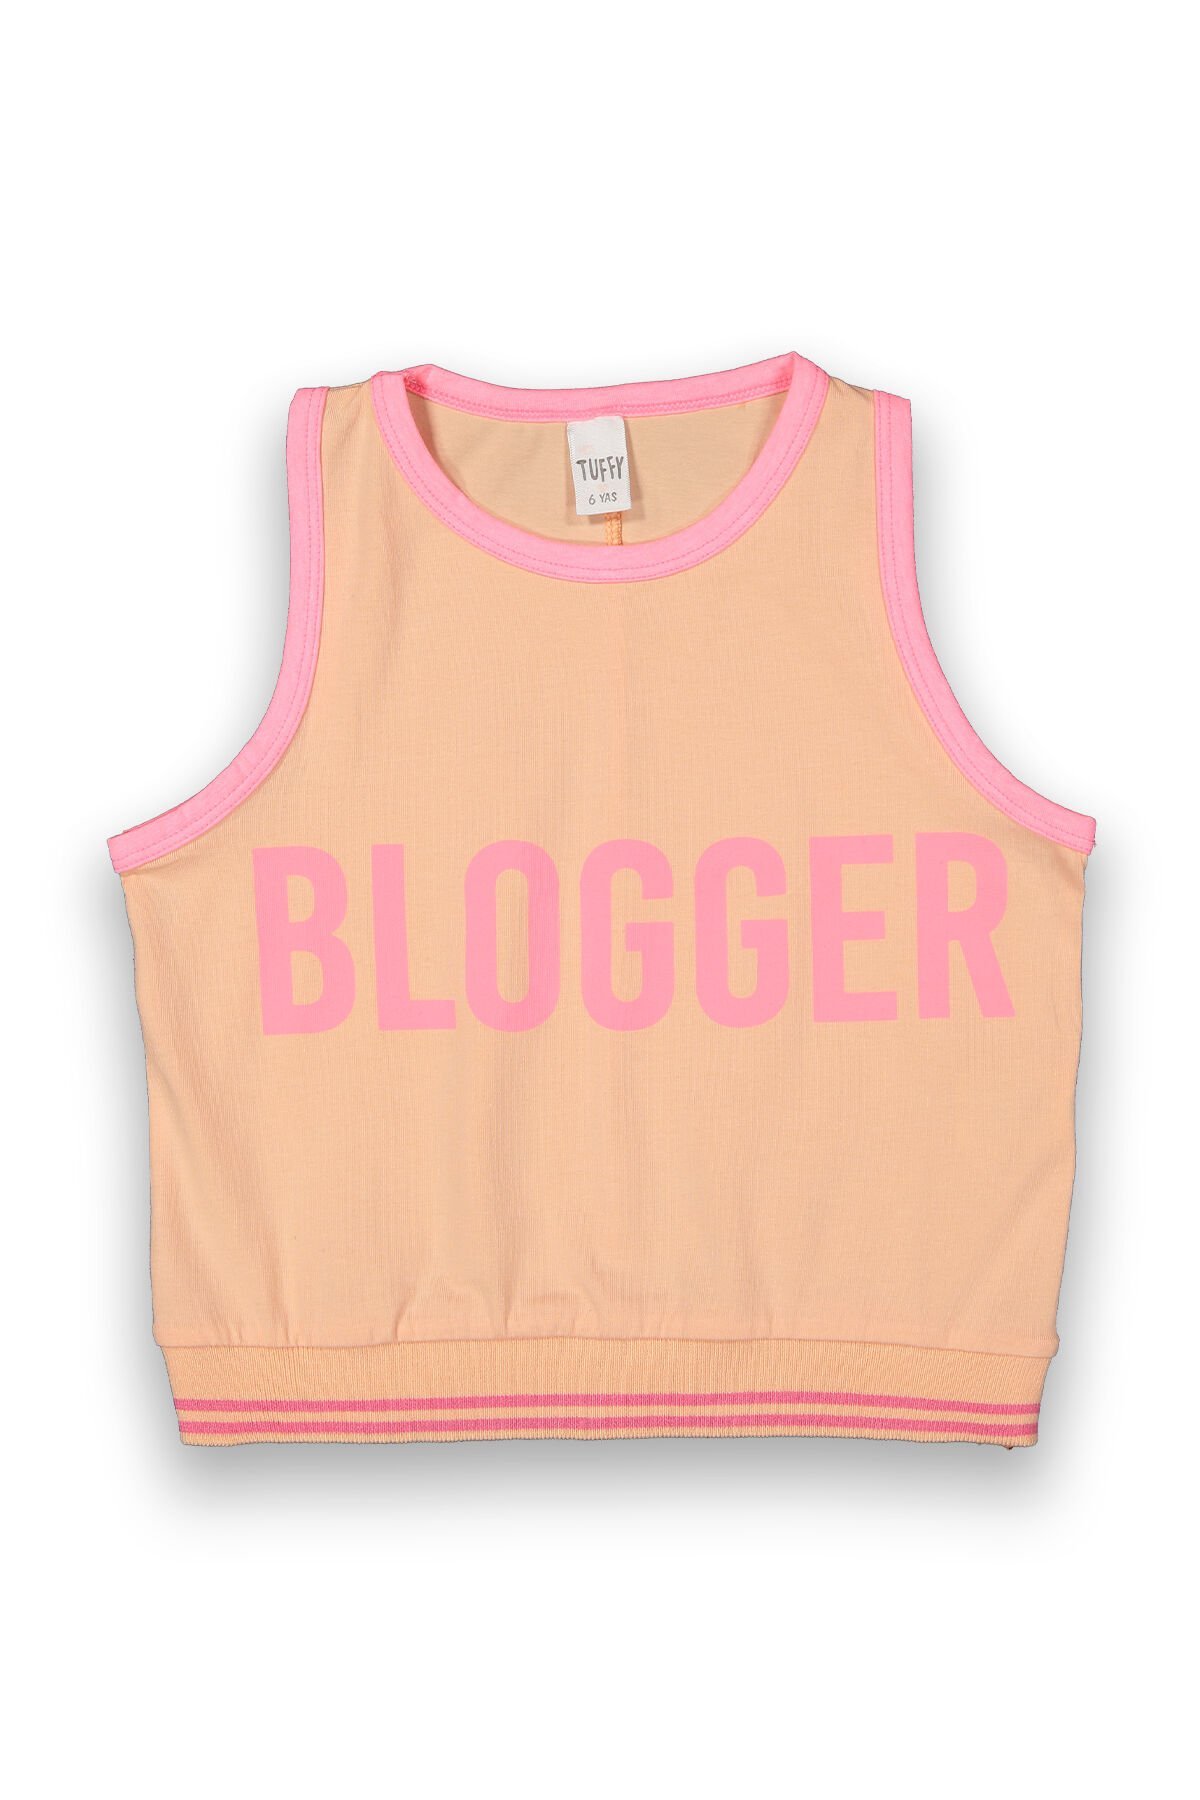 Tuffy Blogger Baskılı Askılı Kız Çocuk T-Shirt-9132